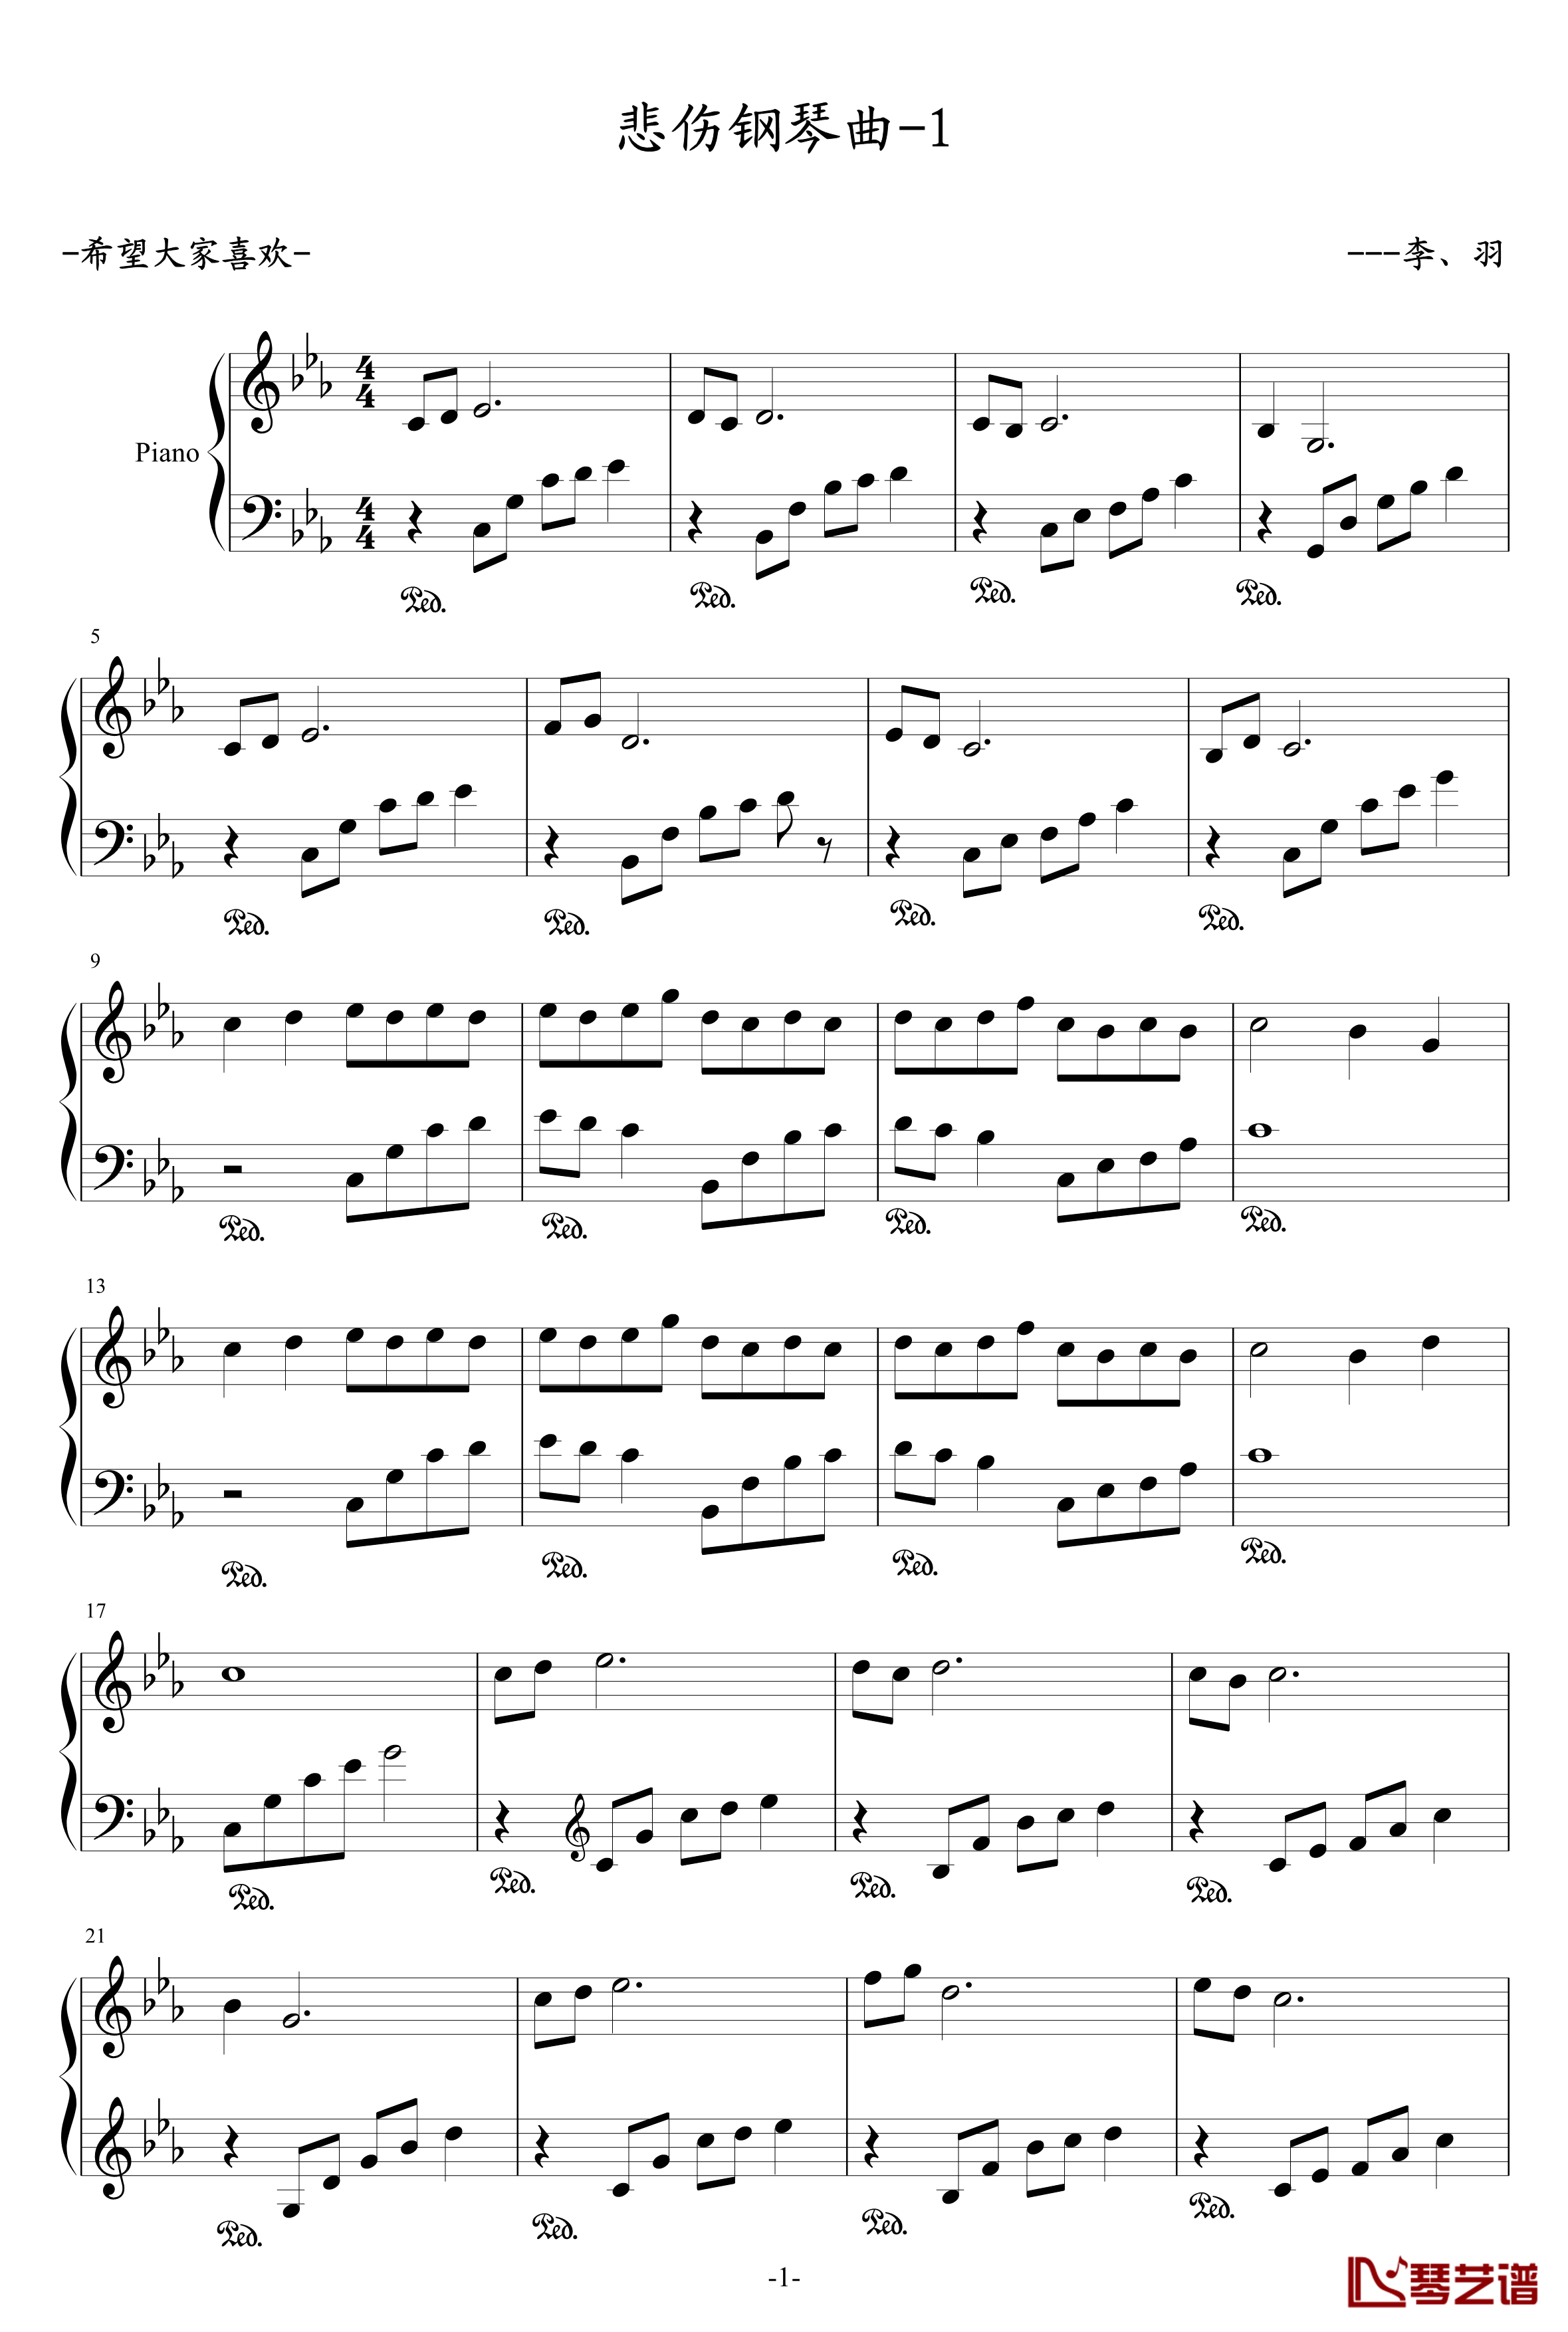 悲伤钢琴曲钢琴谱-1-李羽1